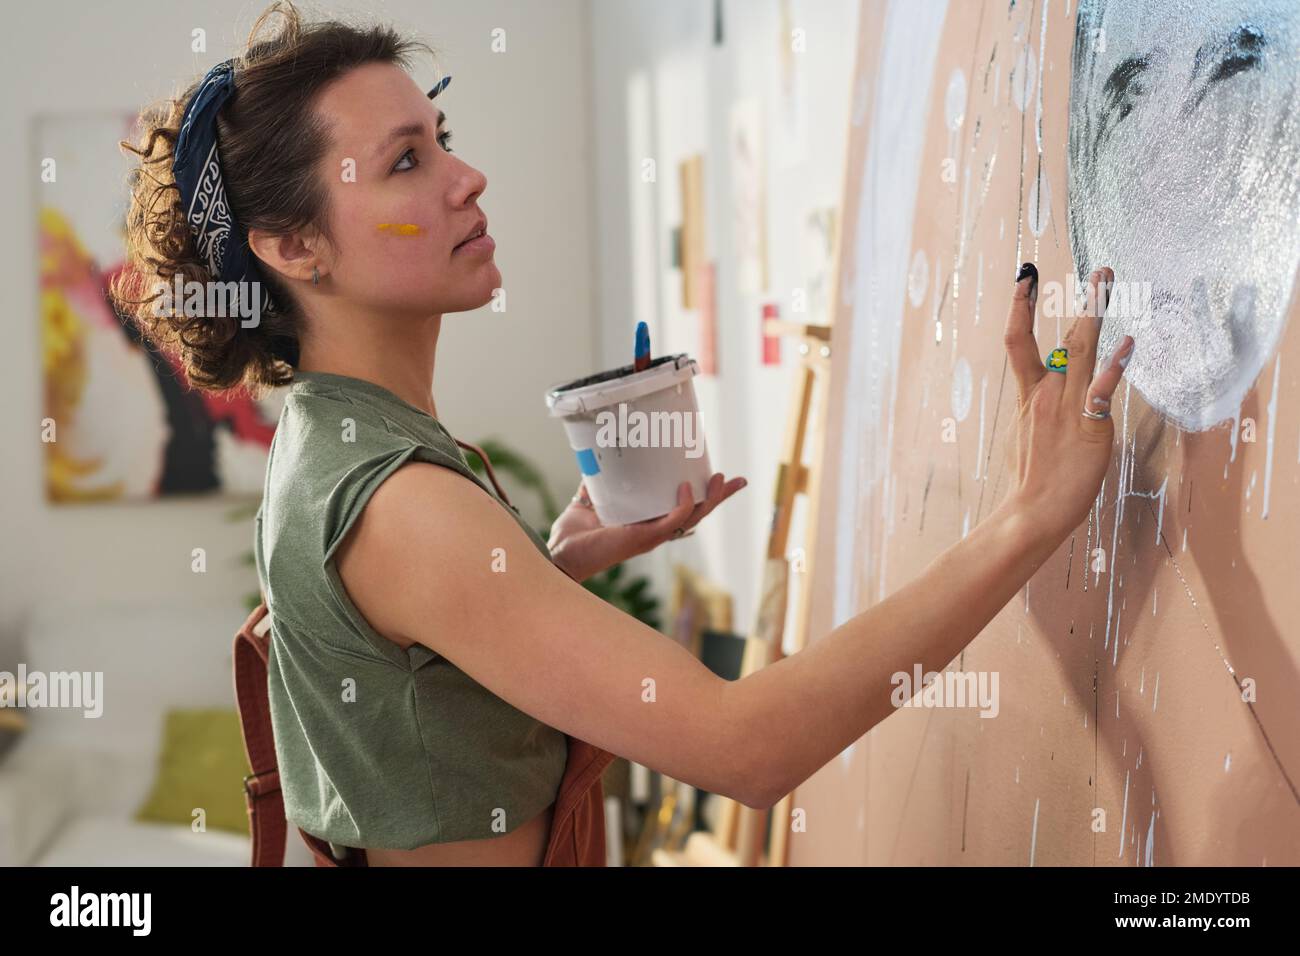 Ein junges kreatives Mädchen mit einem kleinen Eimer Farbe, das ein neues Meisterwerk kreiert, mit den Händen an einer großen Wand ihrer Werkstatt oder ihres Heimstudios Stockfoto